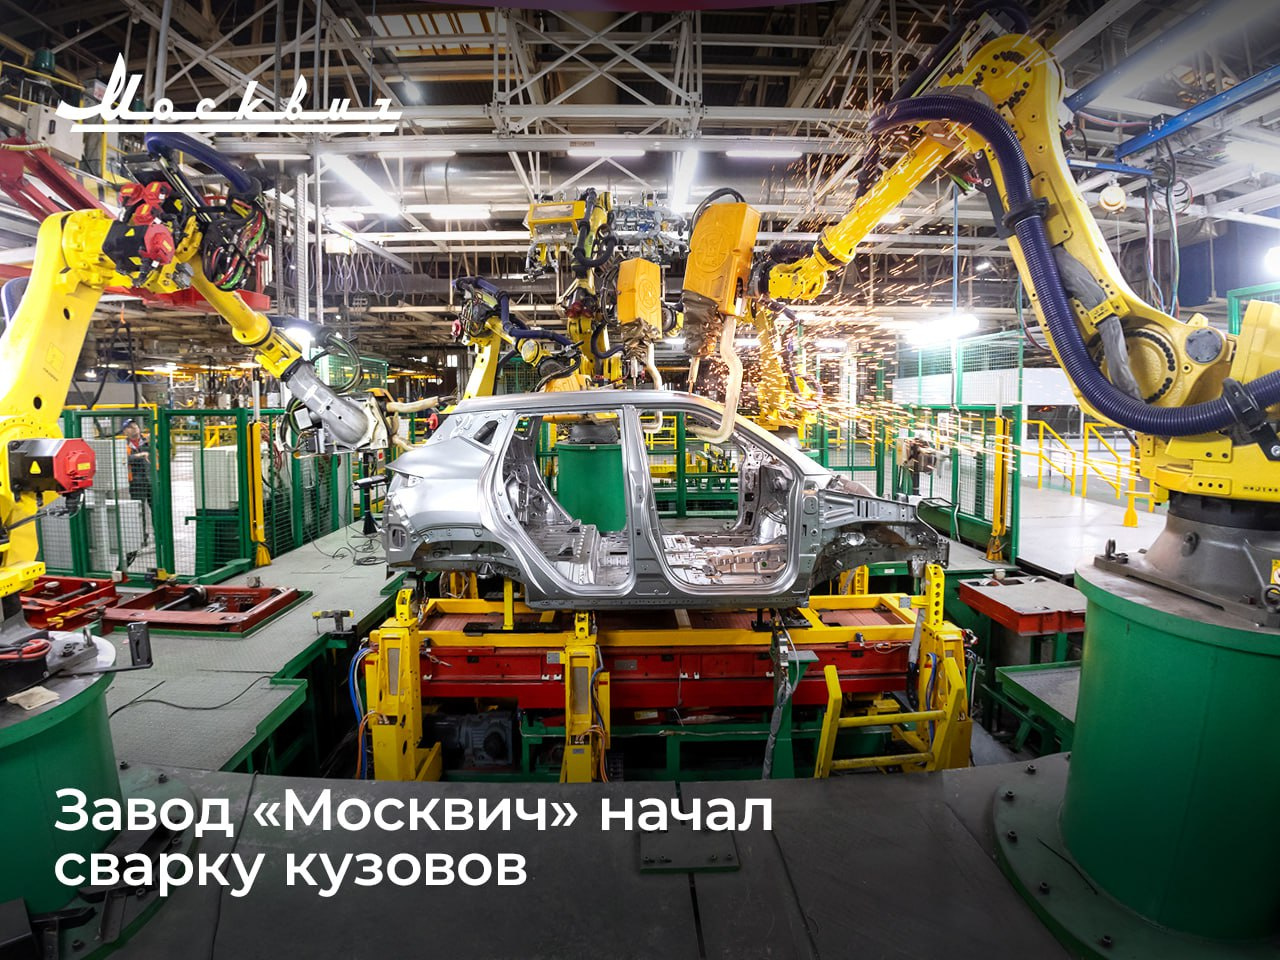 В 2023 году «Москвич» начал тестовую сварку кузовов, но из деталей, которые поставляют в Россию из Китая. Прежде их штамповали на месте из российского проката